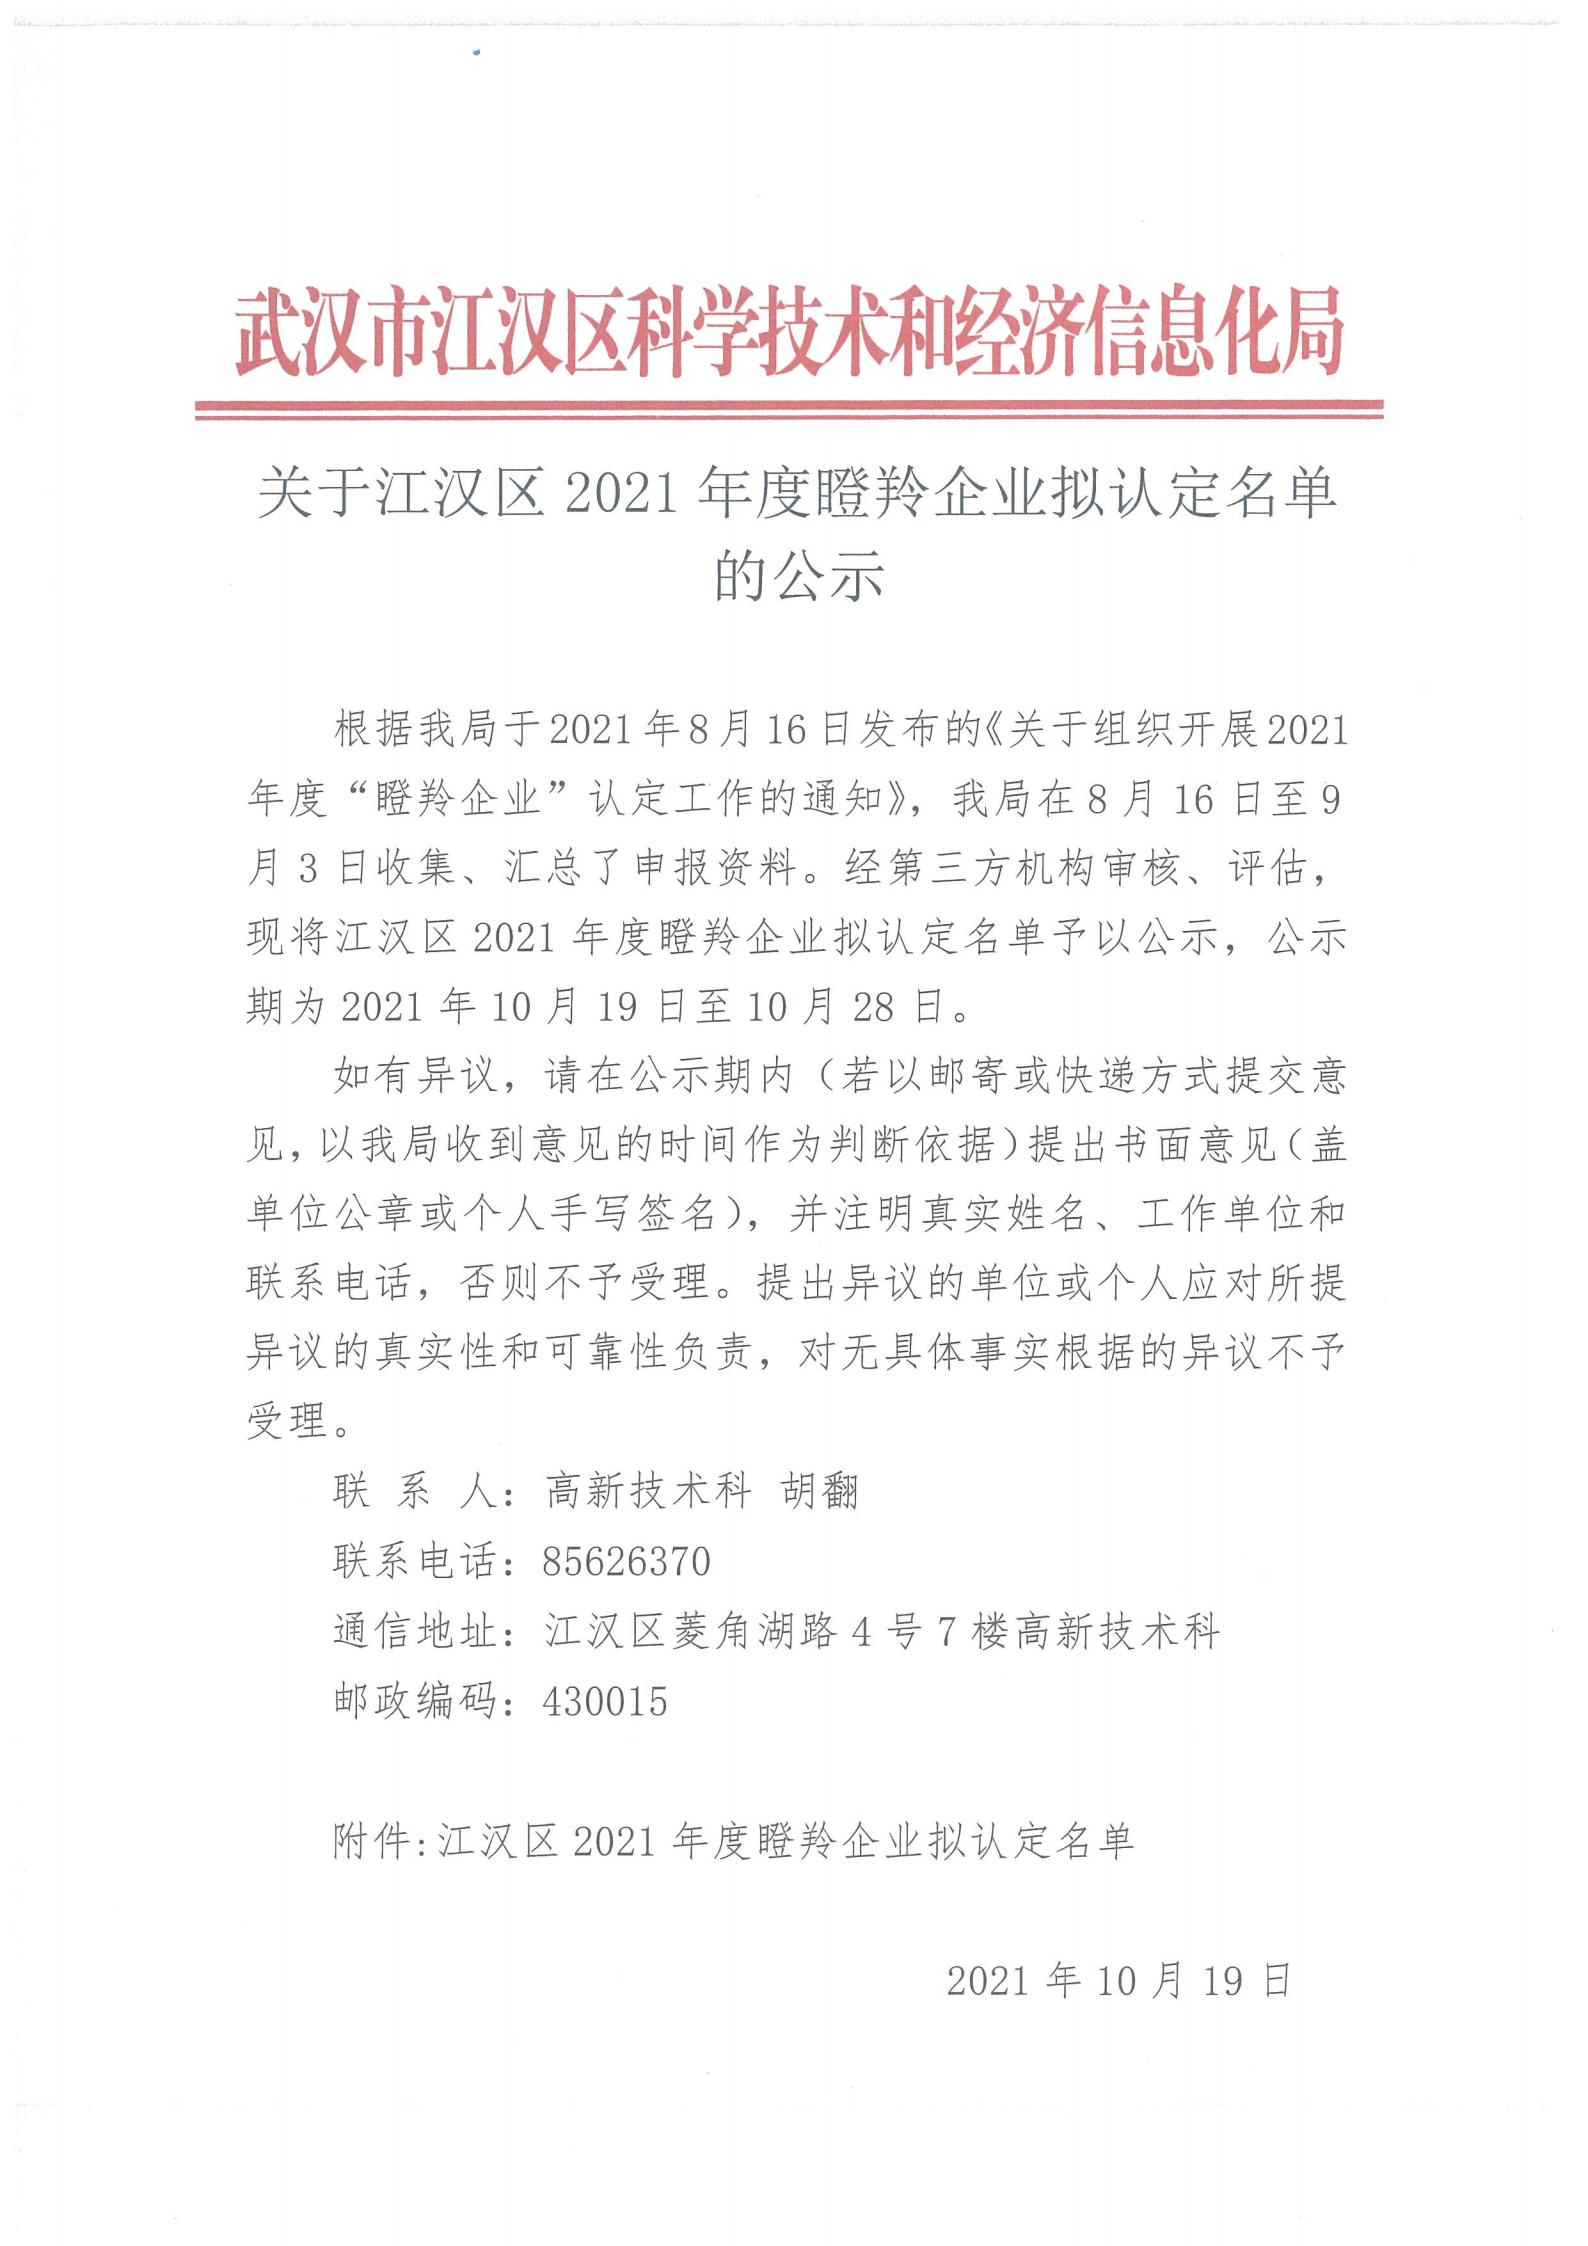 关于江汉区2021年度瞪羚企业拟认定名单的公示(1)_00.png